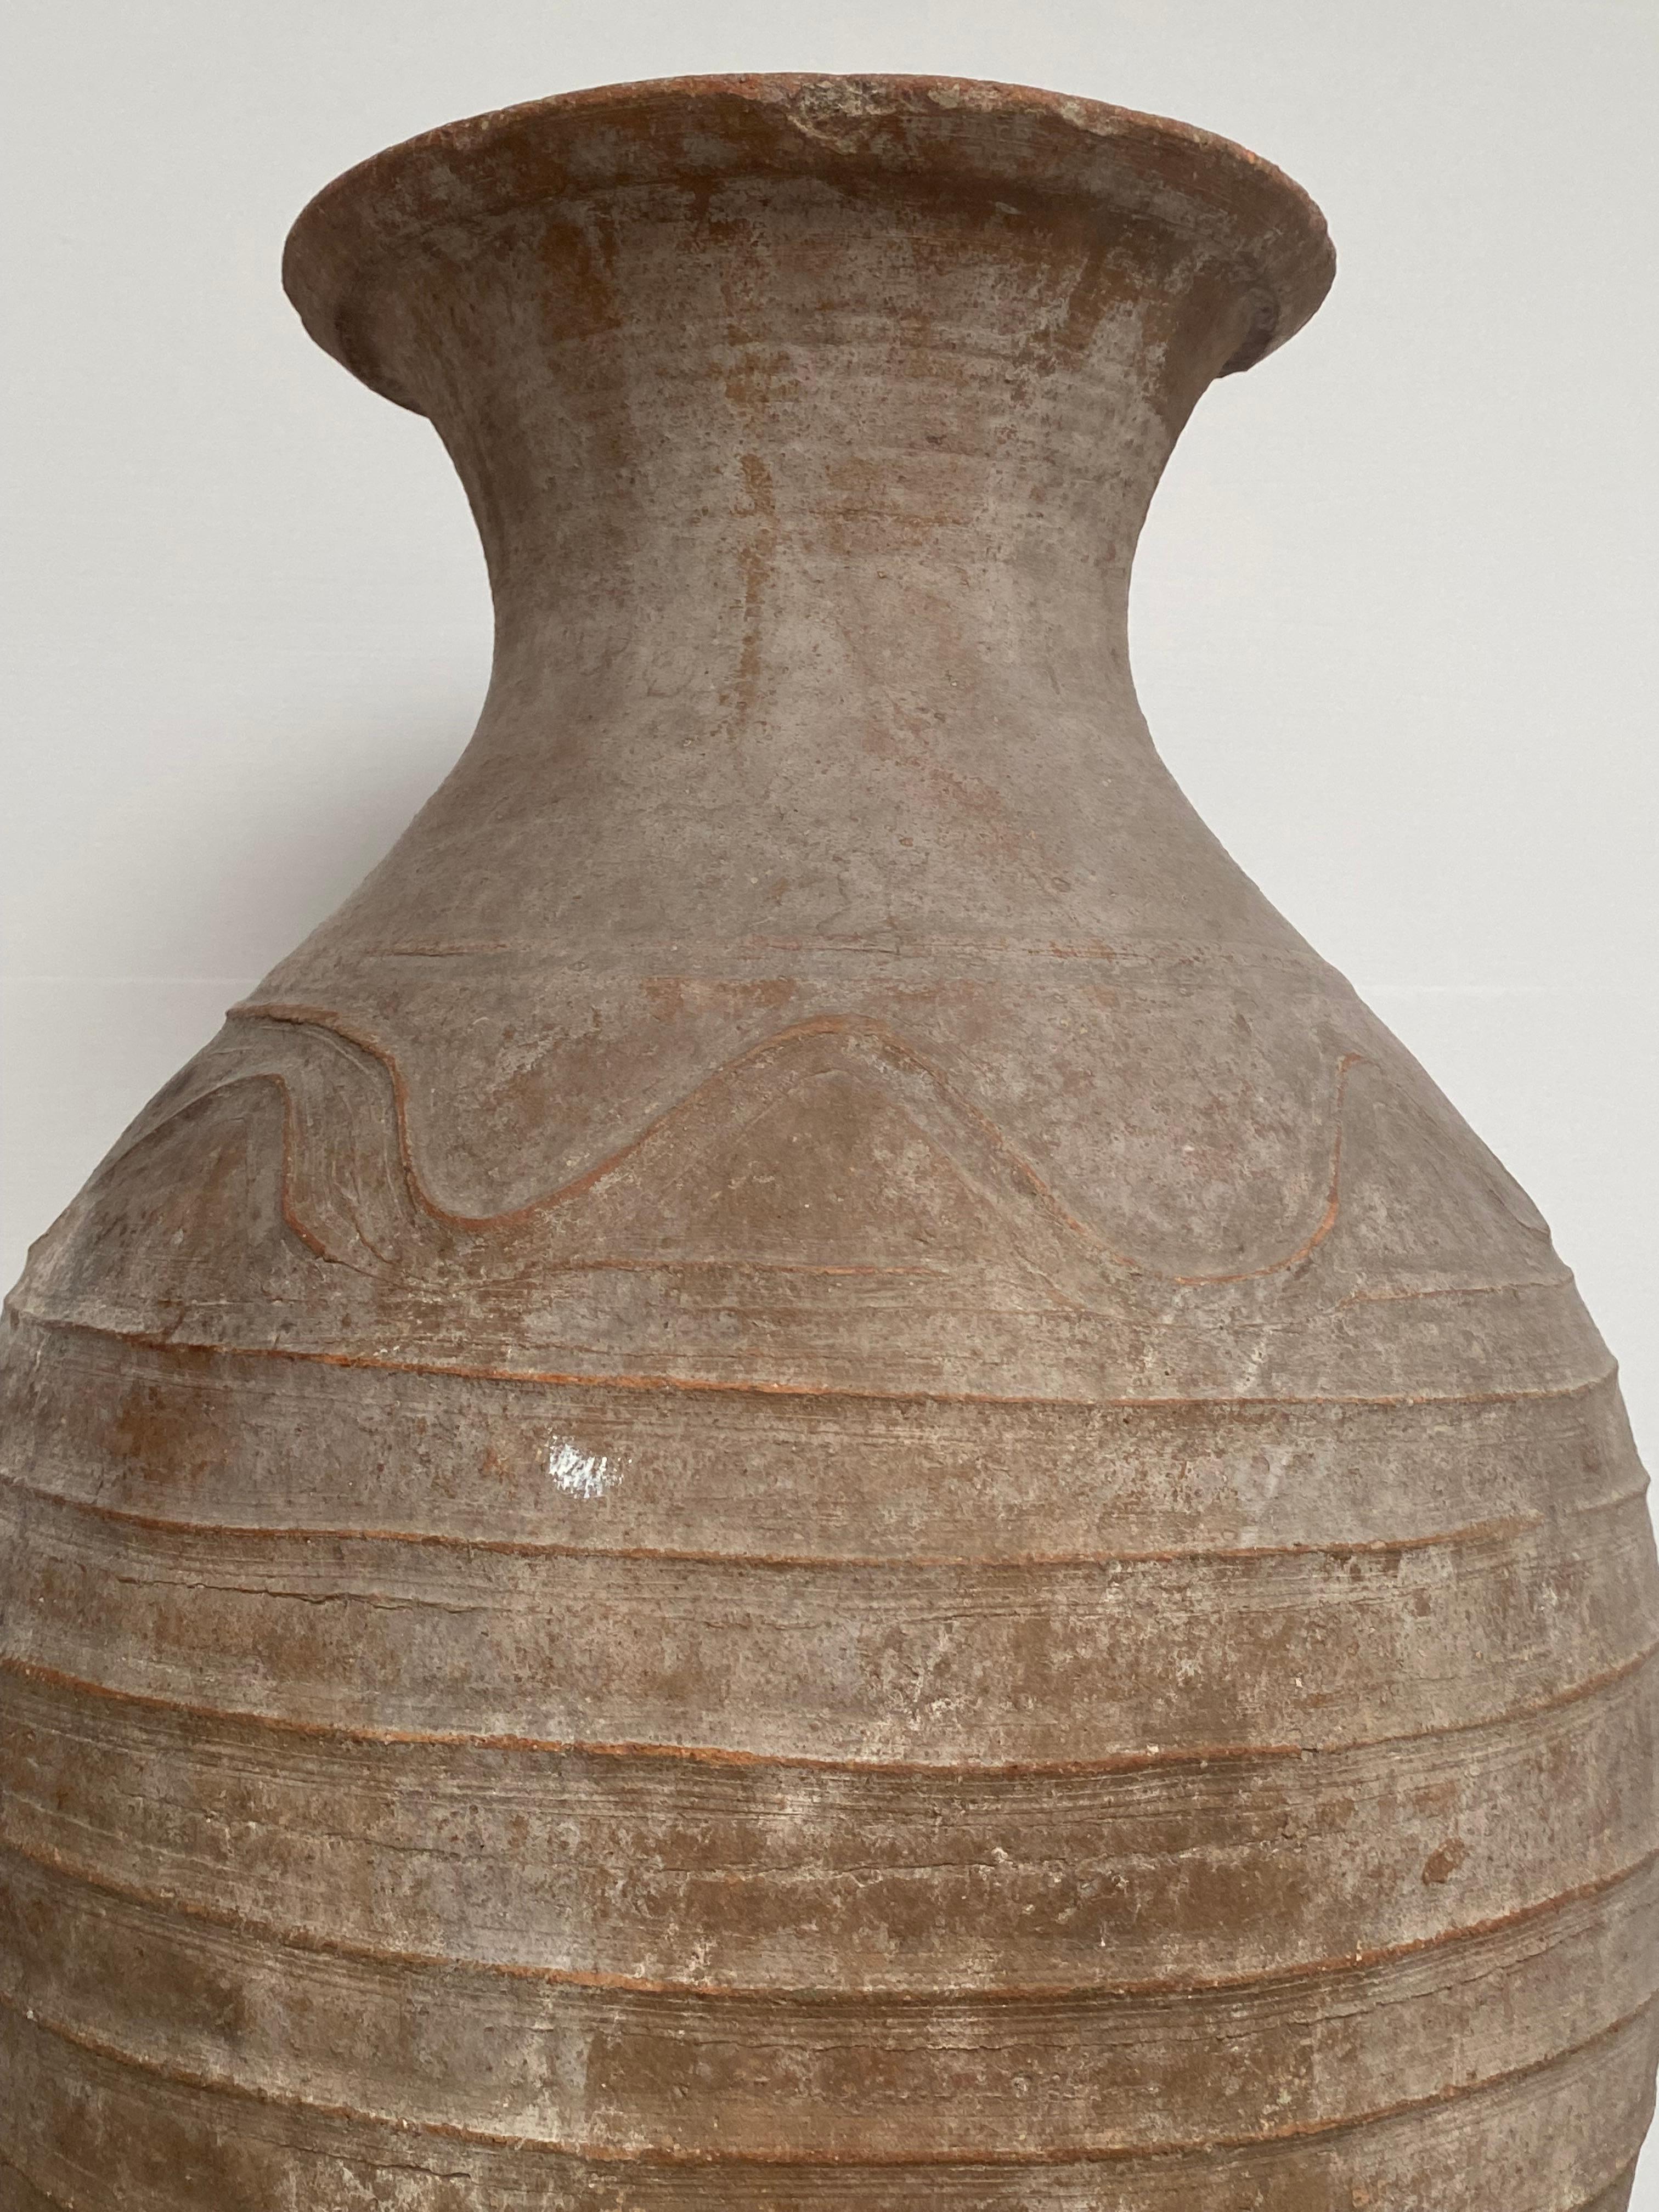 Grand, ancien et très élégant vase en terre cuite d'Iran, 1920
Bon, grande patine ancienne de la terre cuite,
Décoré de lignes et de motifs simples,
Grande brillance des différentes variétés de couleurs brunes,
Une urne ancienne pleine de charme